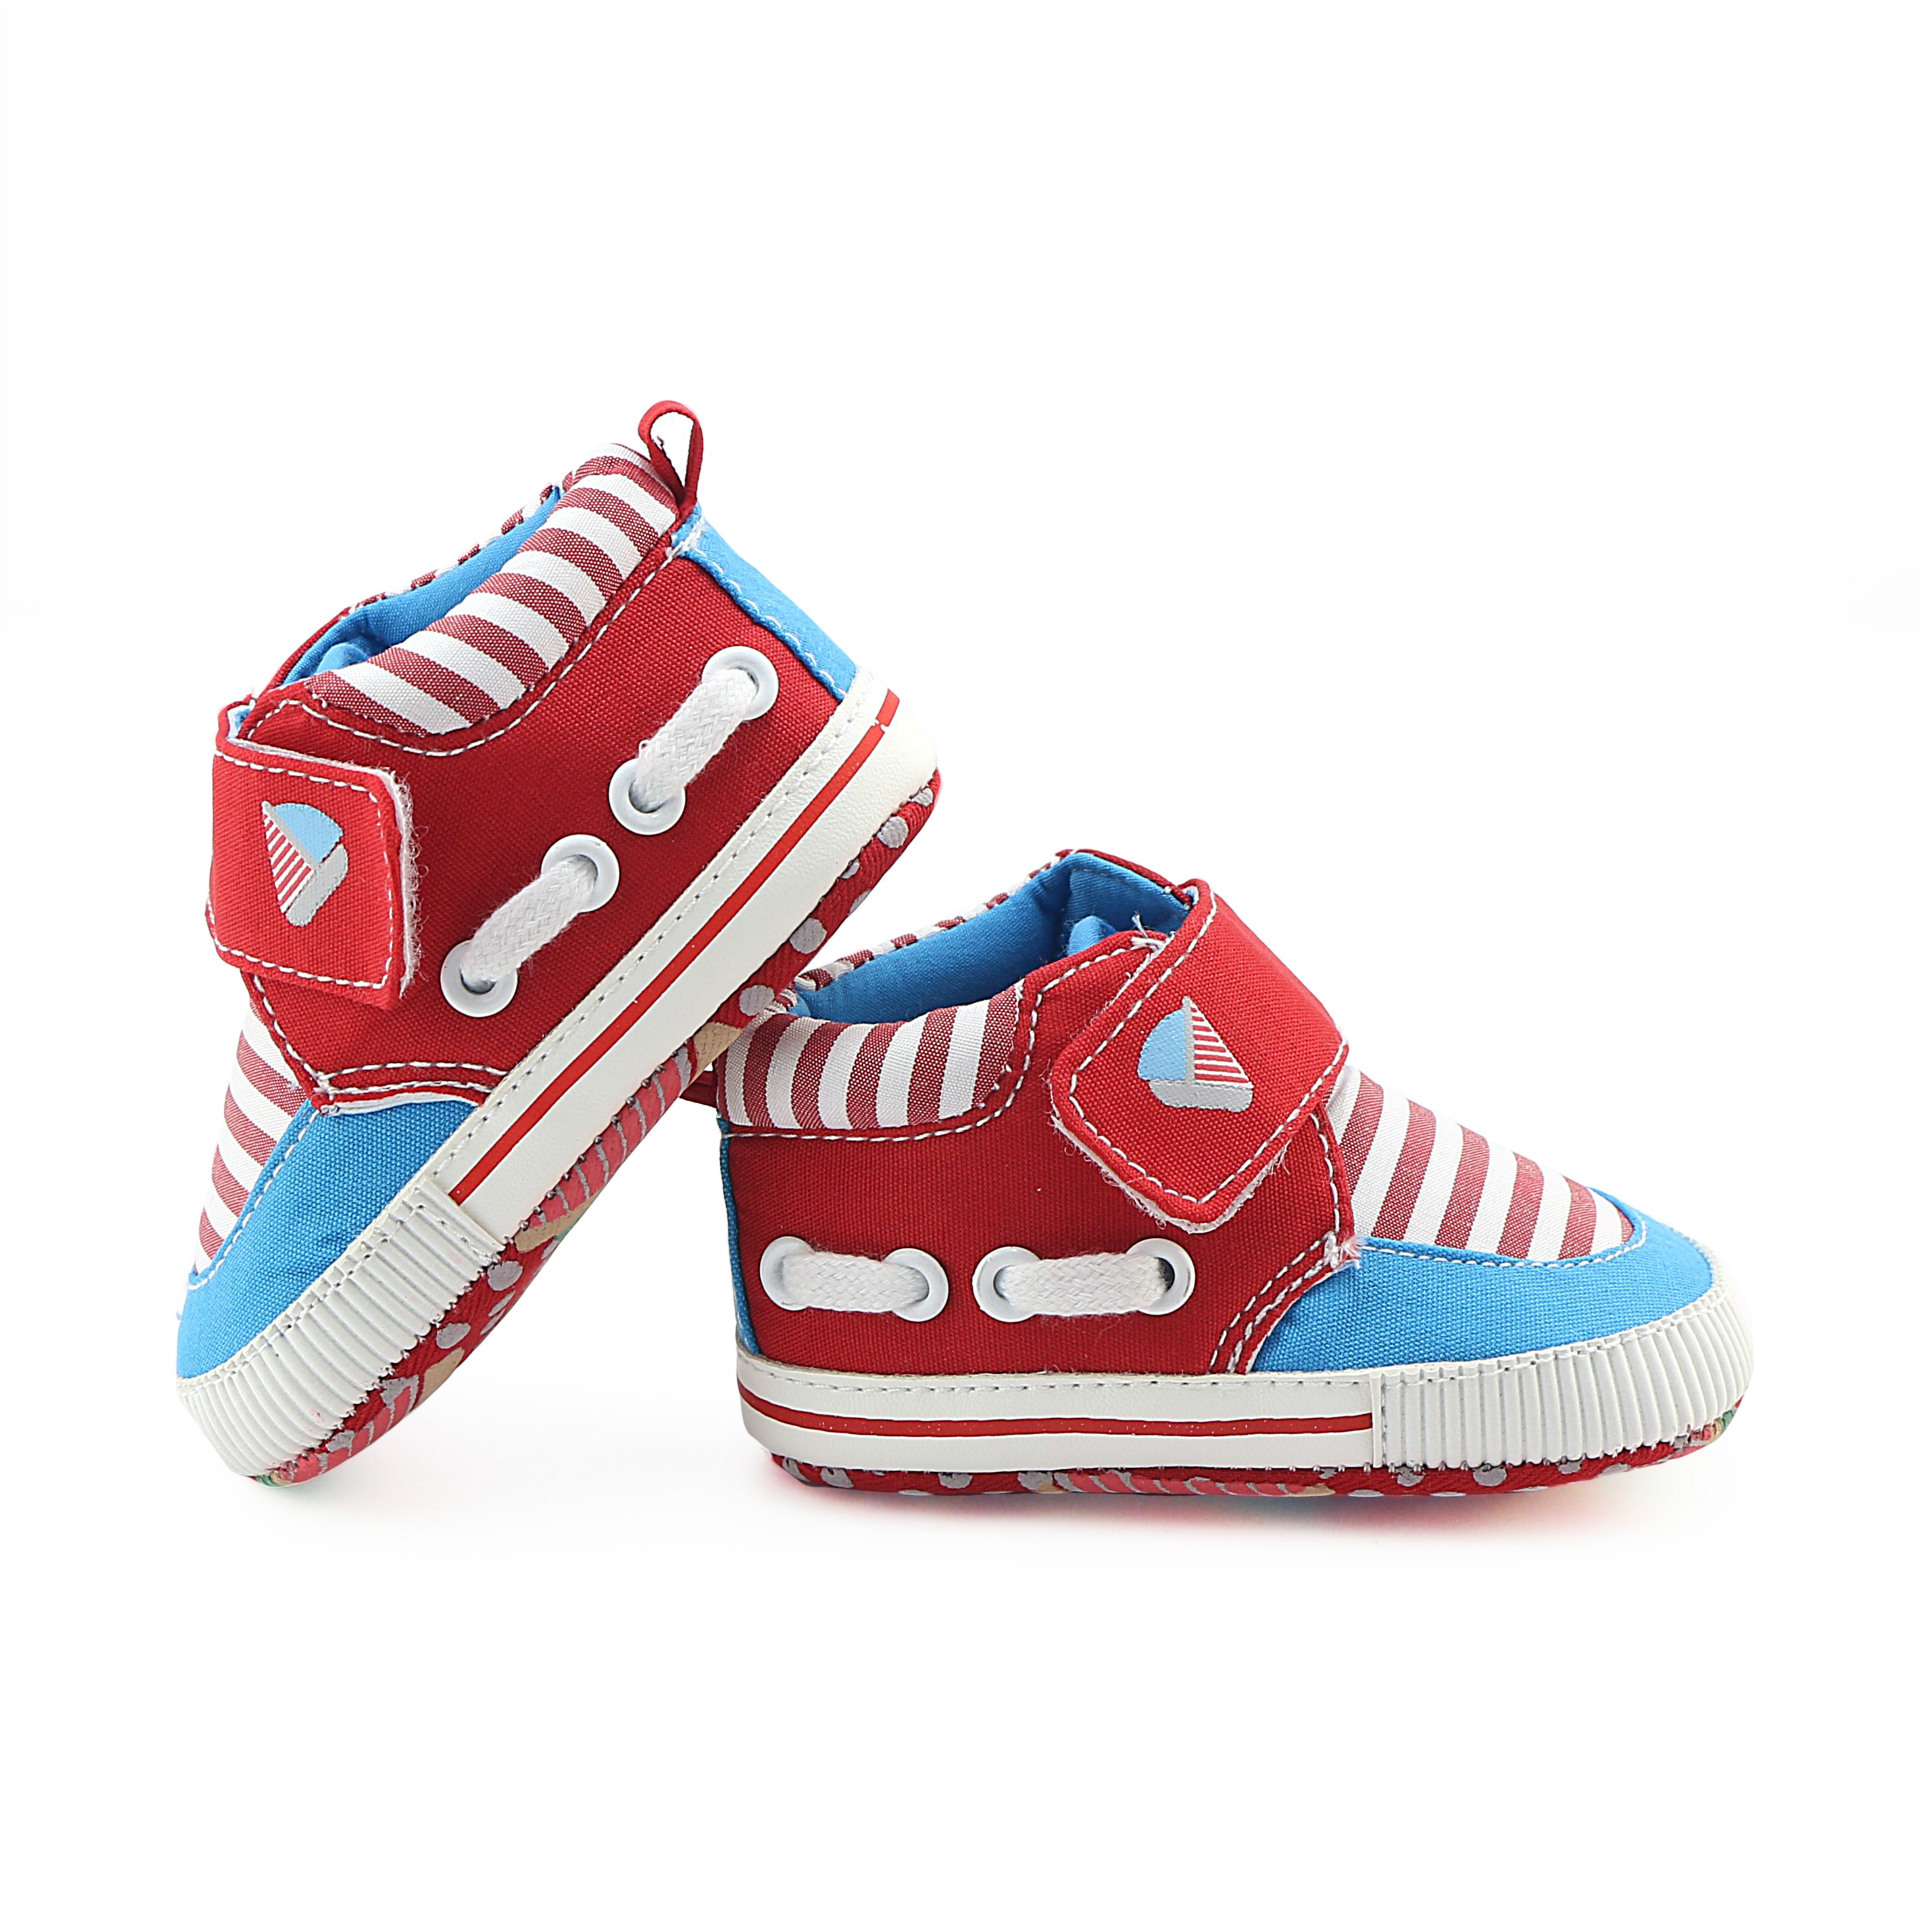 0-1岁baby shoes 卡通软底舒适防滑婴儿鞋宝宝学步鞋bb鞋一件代发